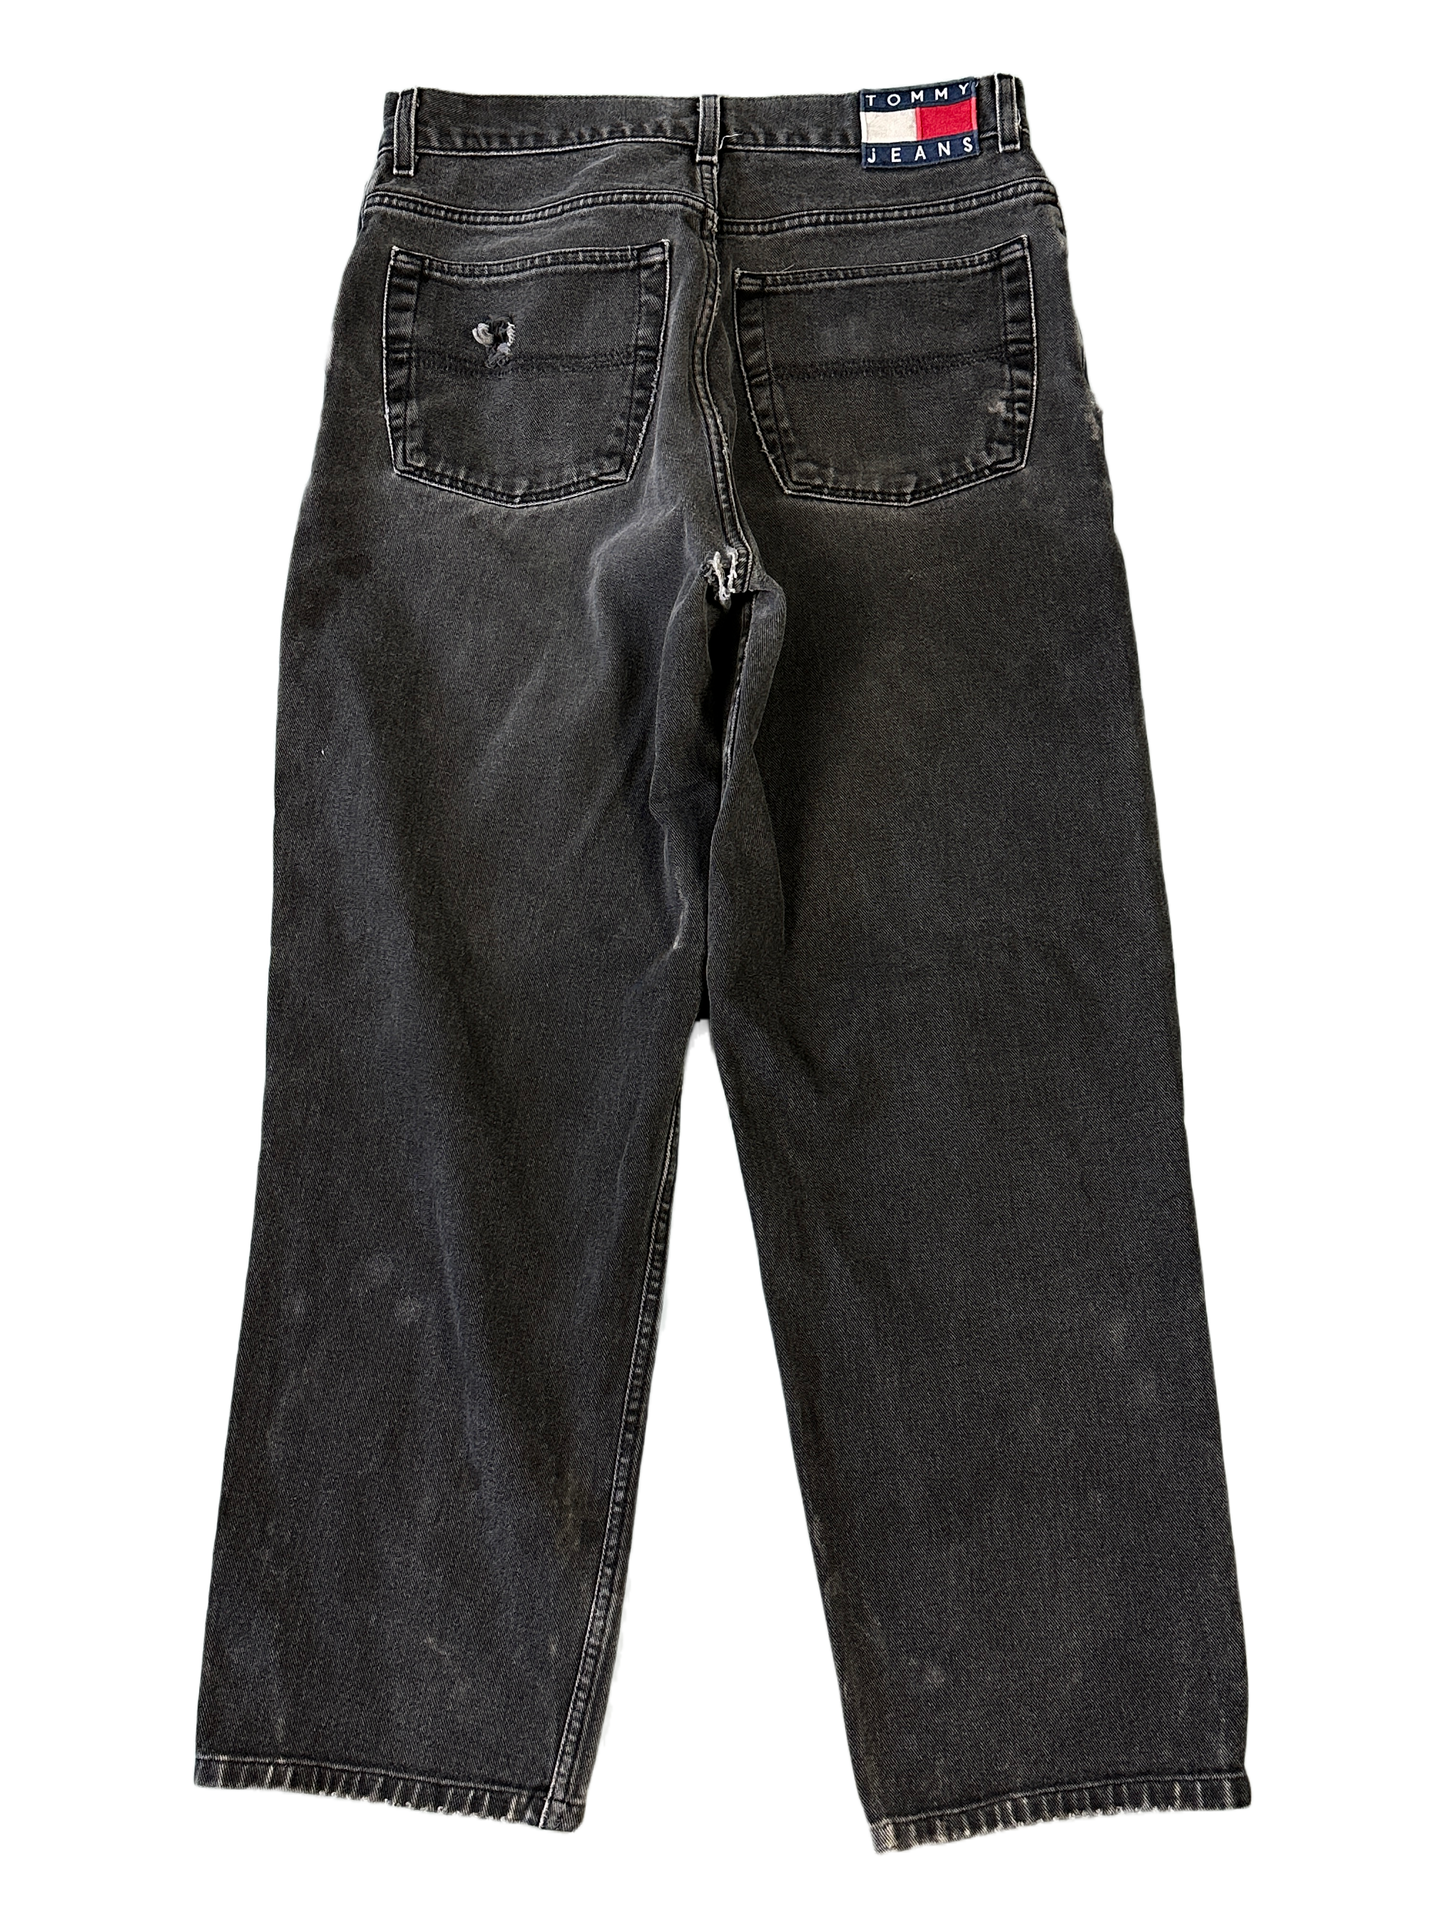 Tommy Hilfiger Vintage Jeans - 34 x 34